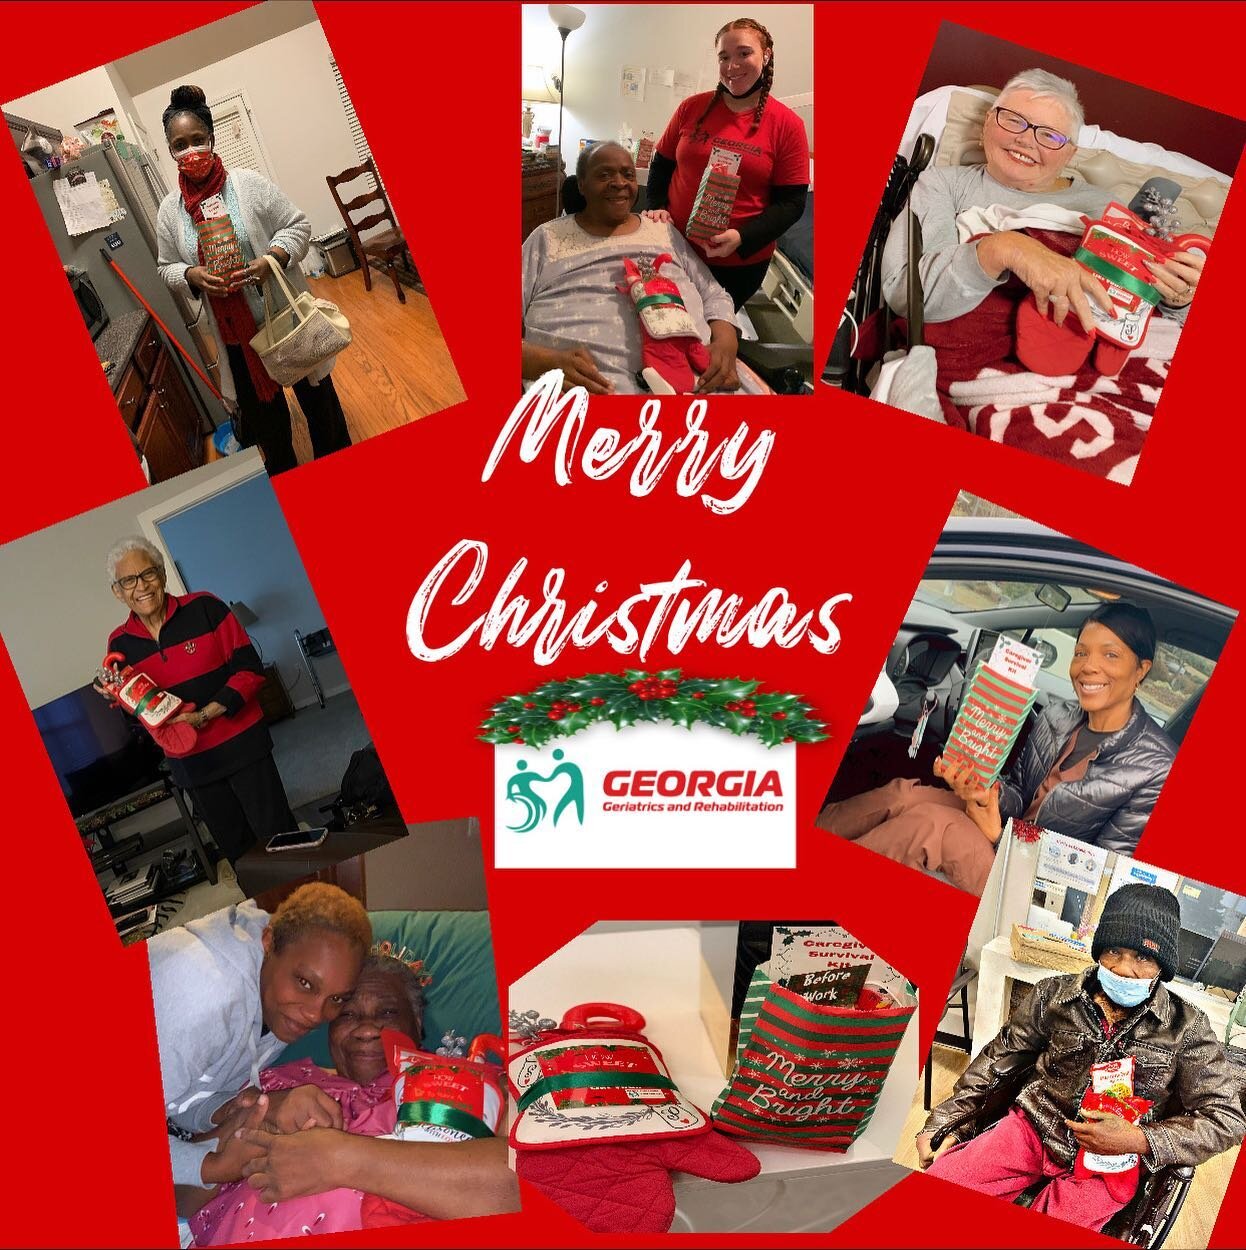 Merry Christmas from your favorite homecare provider:
Georgia Geriatrics &amp; Rehab! 🎄❤️💚 #homecareagency #georgia #elderlycare #seniorcare #medicare